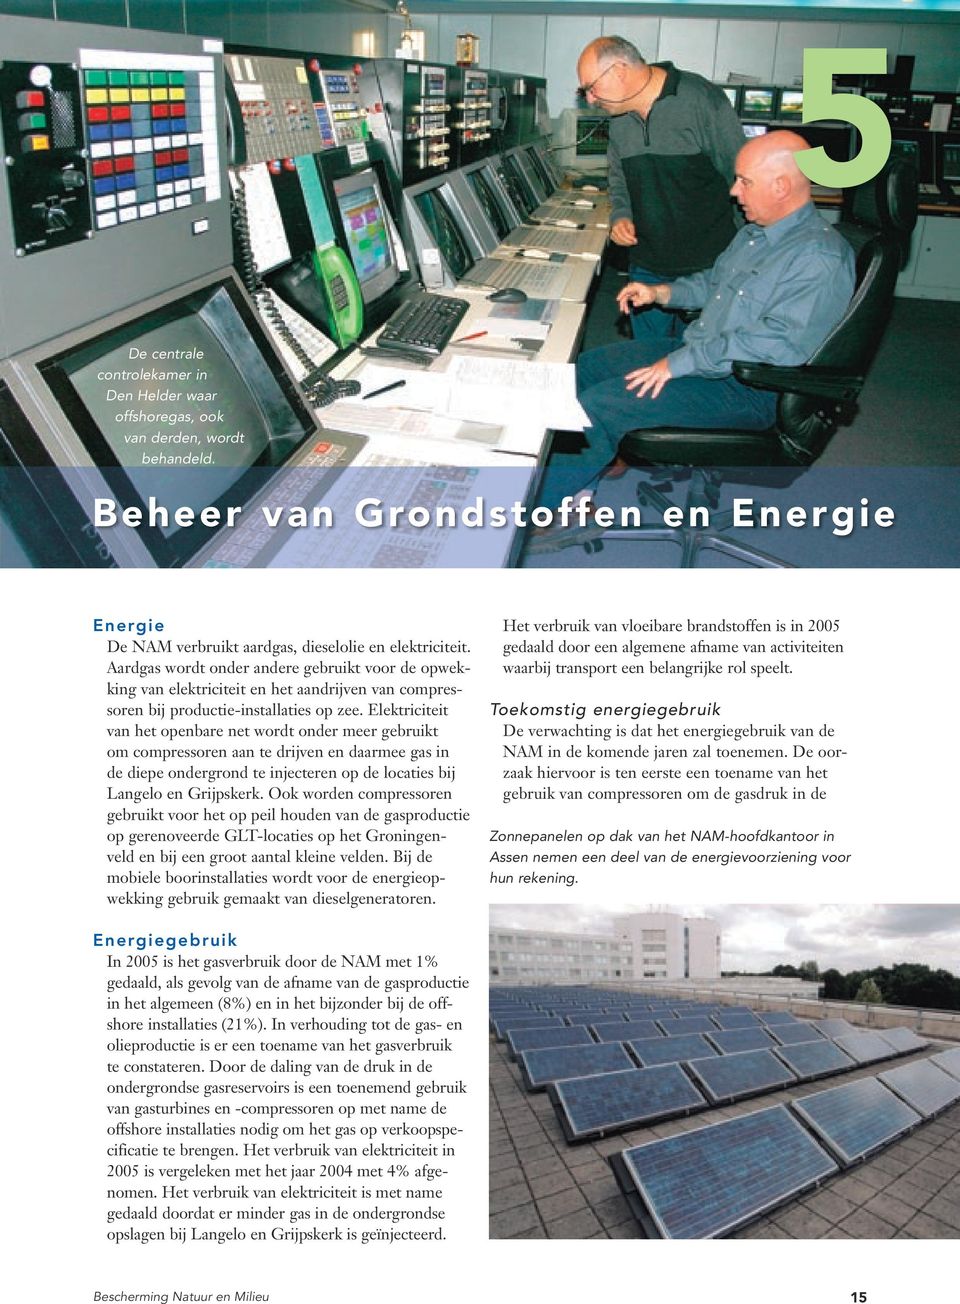 Elektriciteit van het openbare net wordt onder meer gebruikt om compressoren aan te drijven en daarmee gas in de diepe ondergrond te injecteren op de locaties bij Langelo en Grijpskerk.